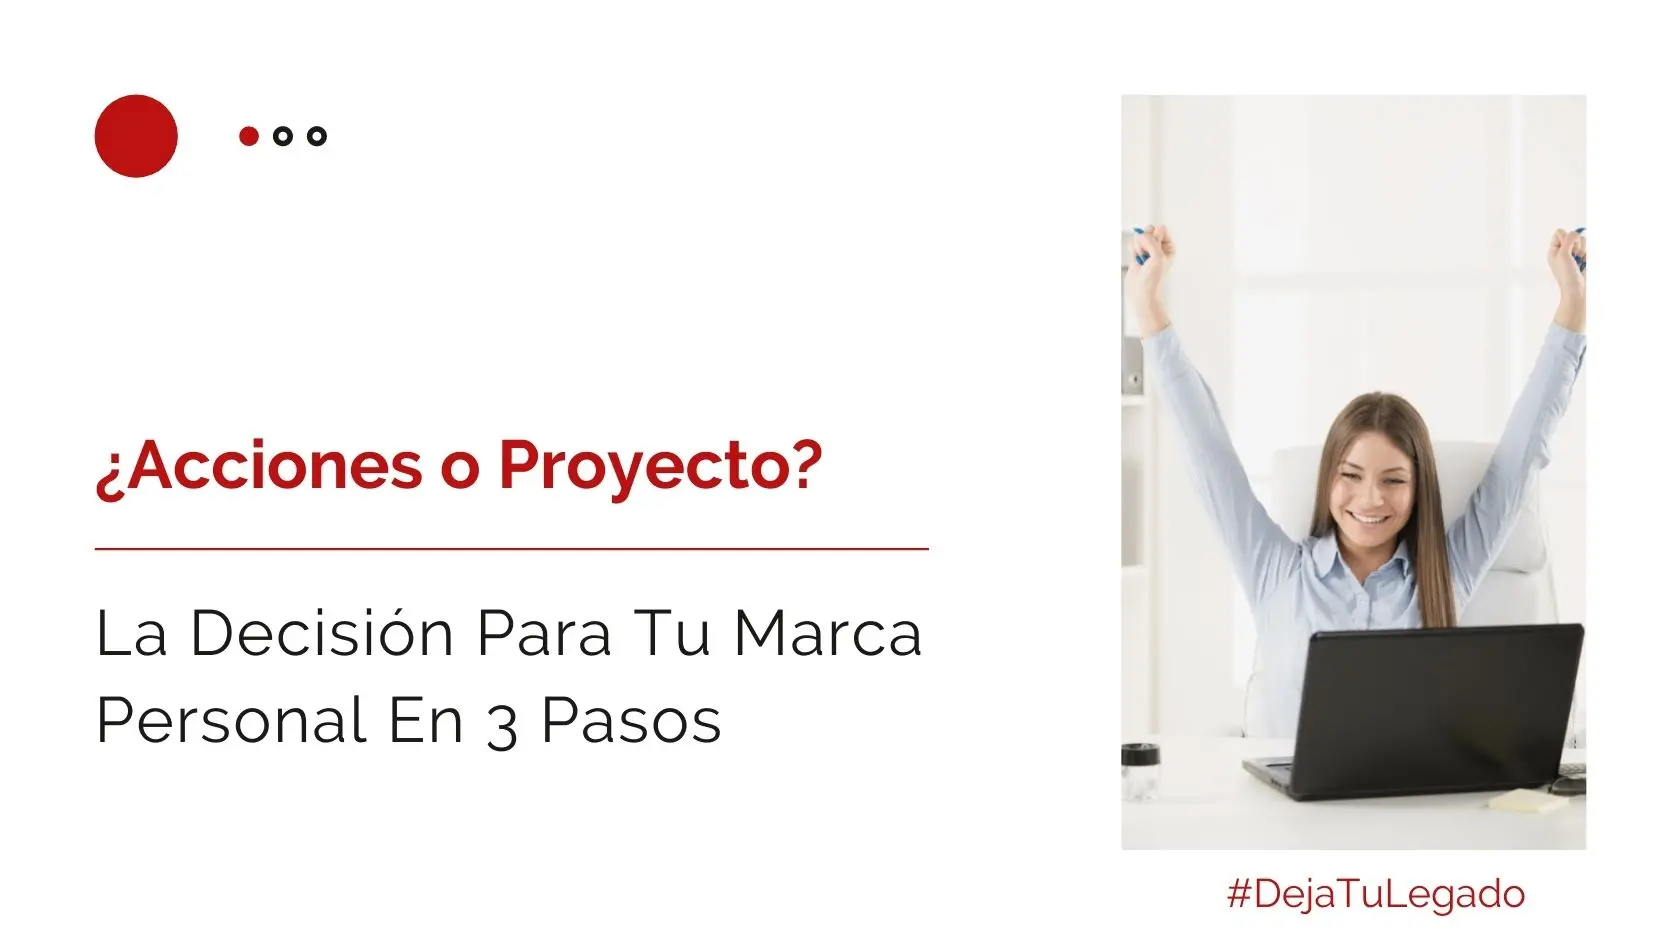 Héctor-Jimenez-Acciones-o-Proyecto-La-Decisión-Para-Tu-Marca-Personal-En-3-Pasos-1